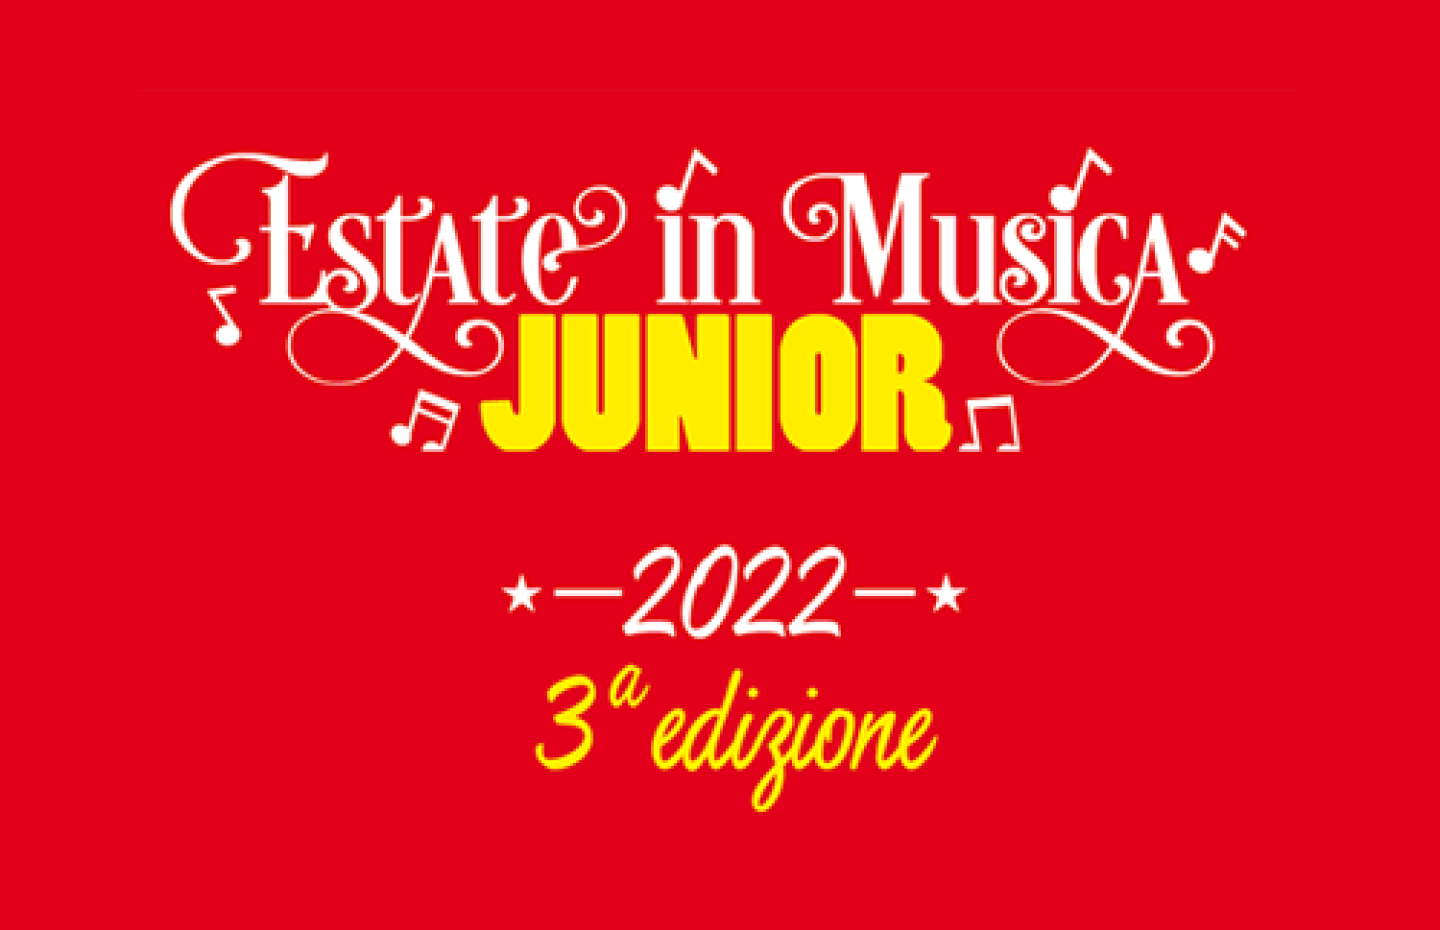 EVIDENZA_Esate-in-Musica-Campus-Junior-2022